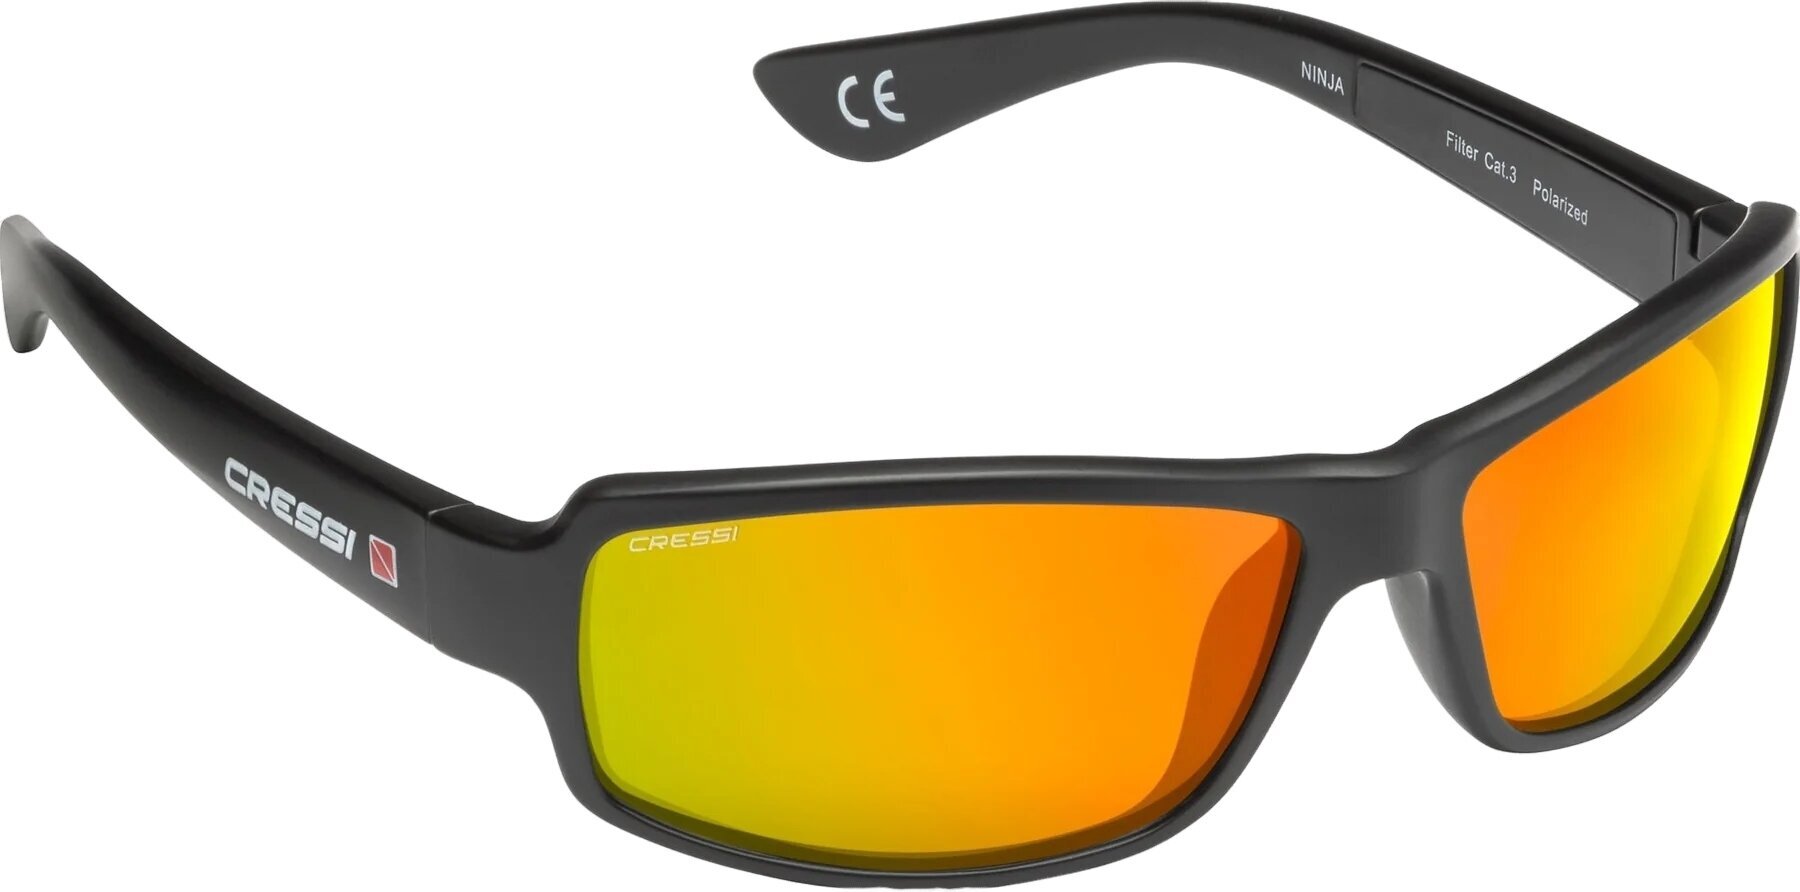 Γυαλιά Ιστιοπλοΐας Cressi Ninja Black/Orange/Mirrored Γυαλιά Ιστιοπλοΐας